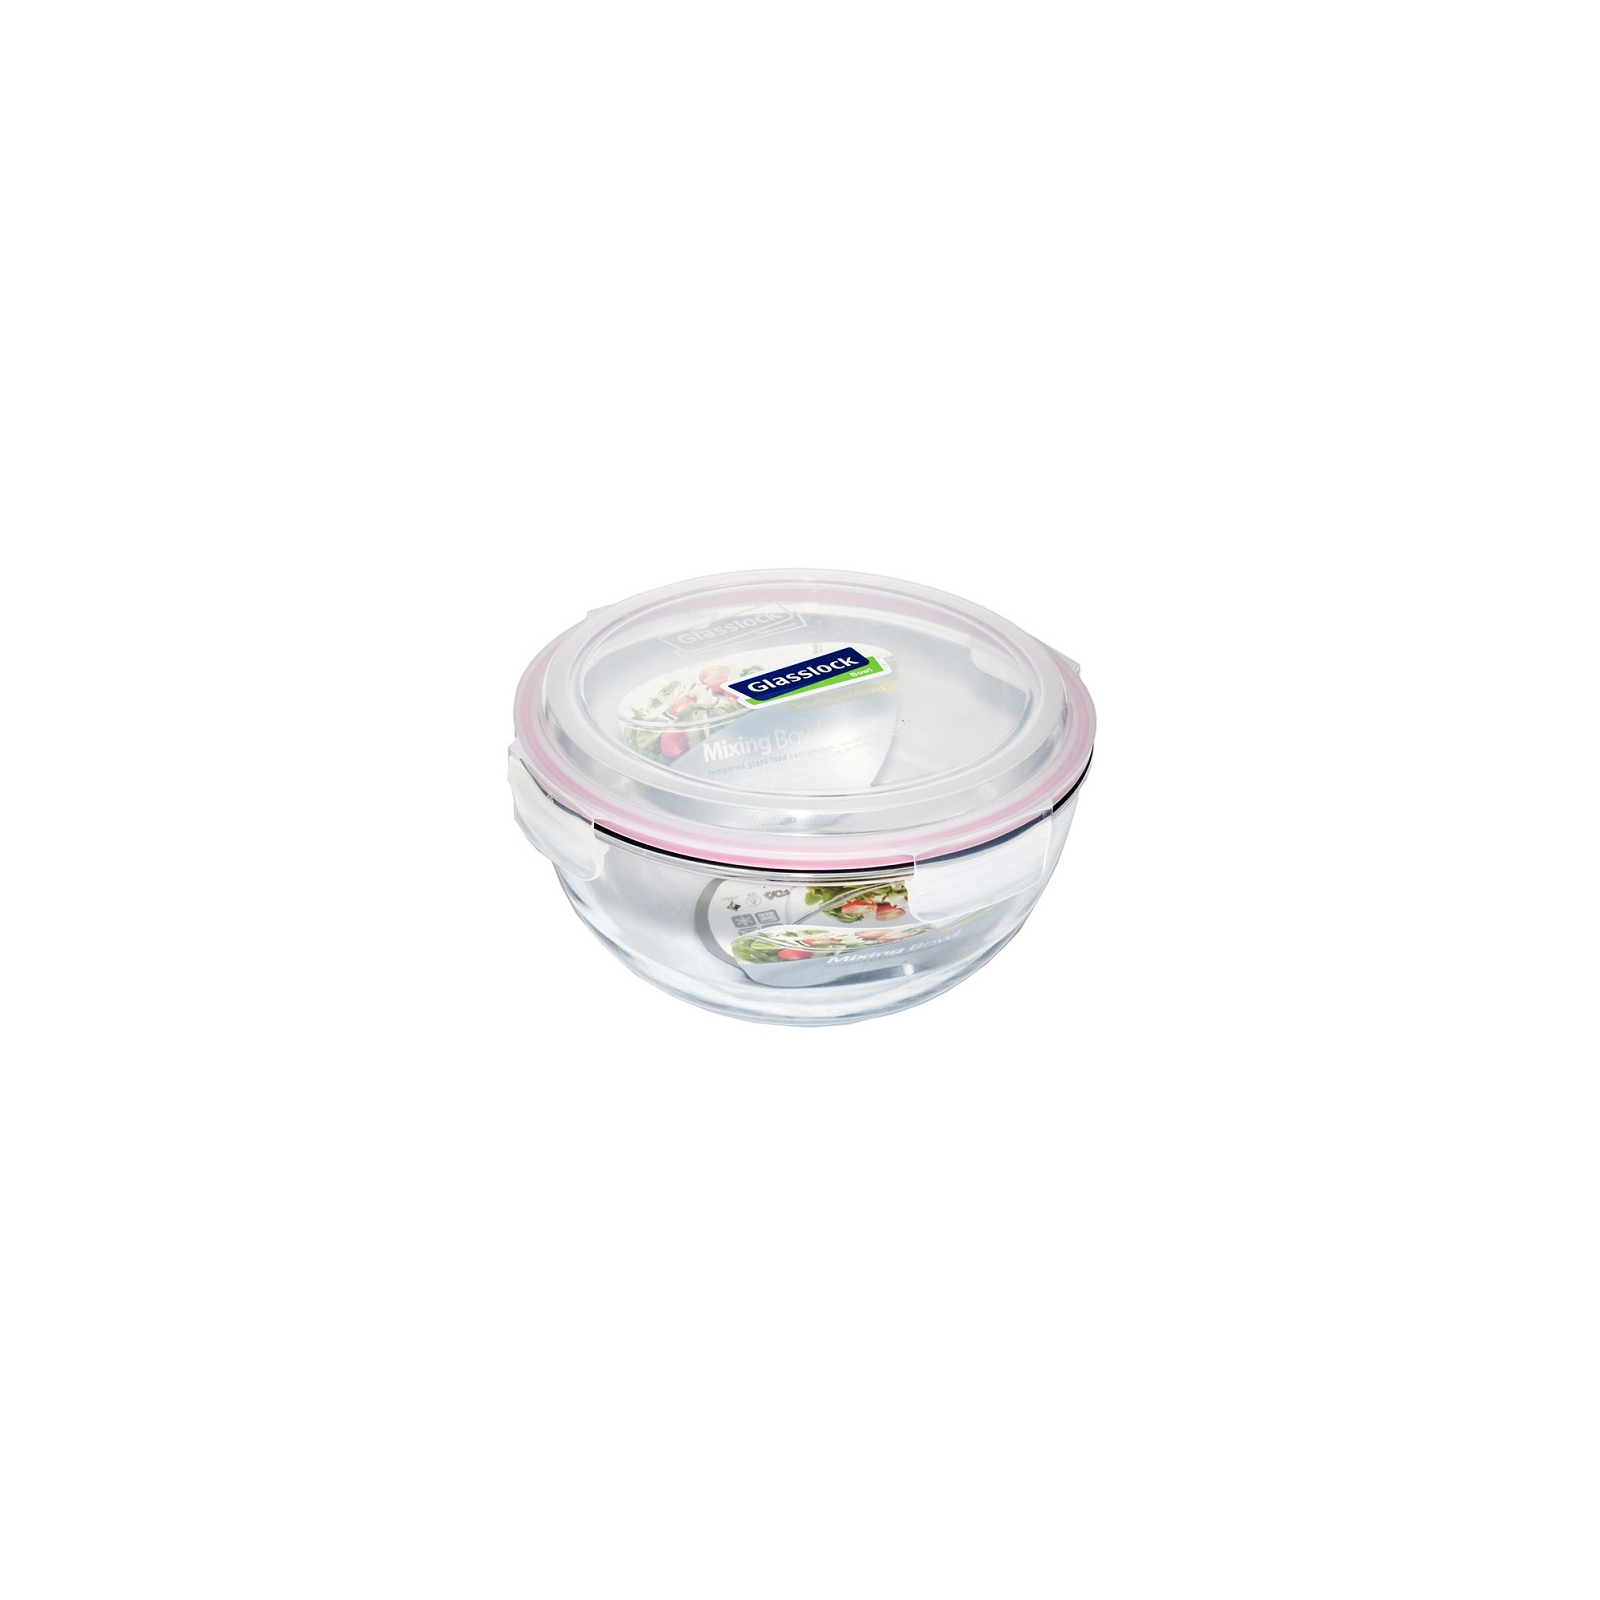 Пищевой контейнер Glasslock кругл. 1,0 л (MBCB-100)